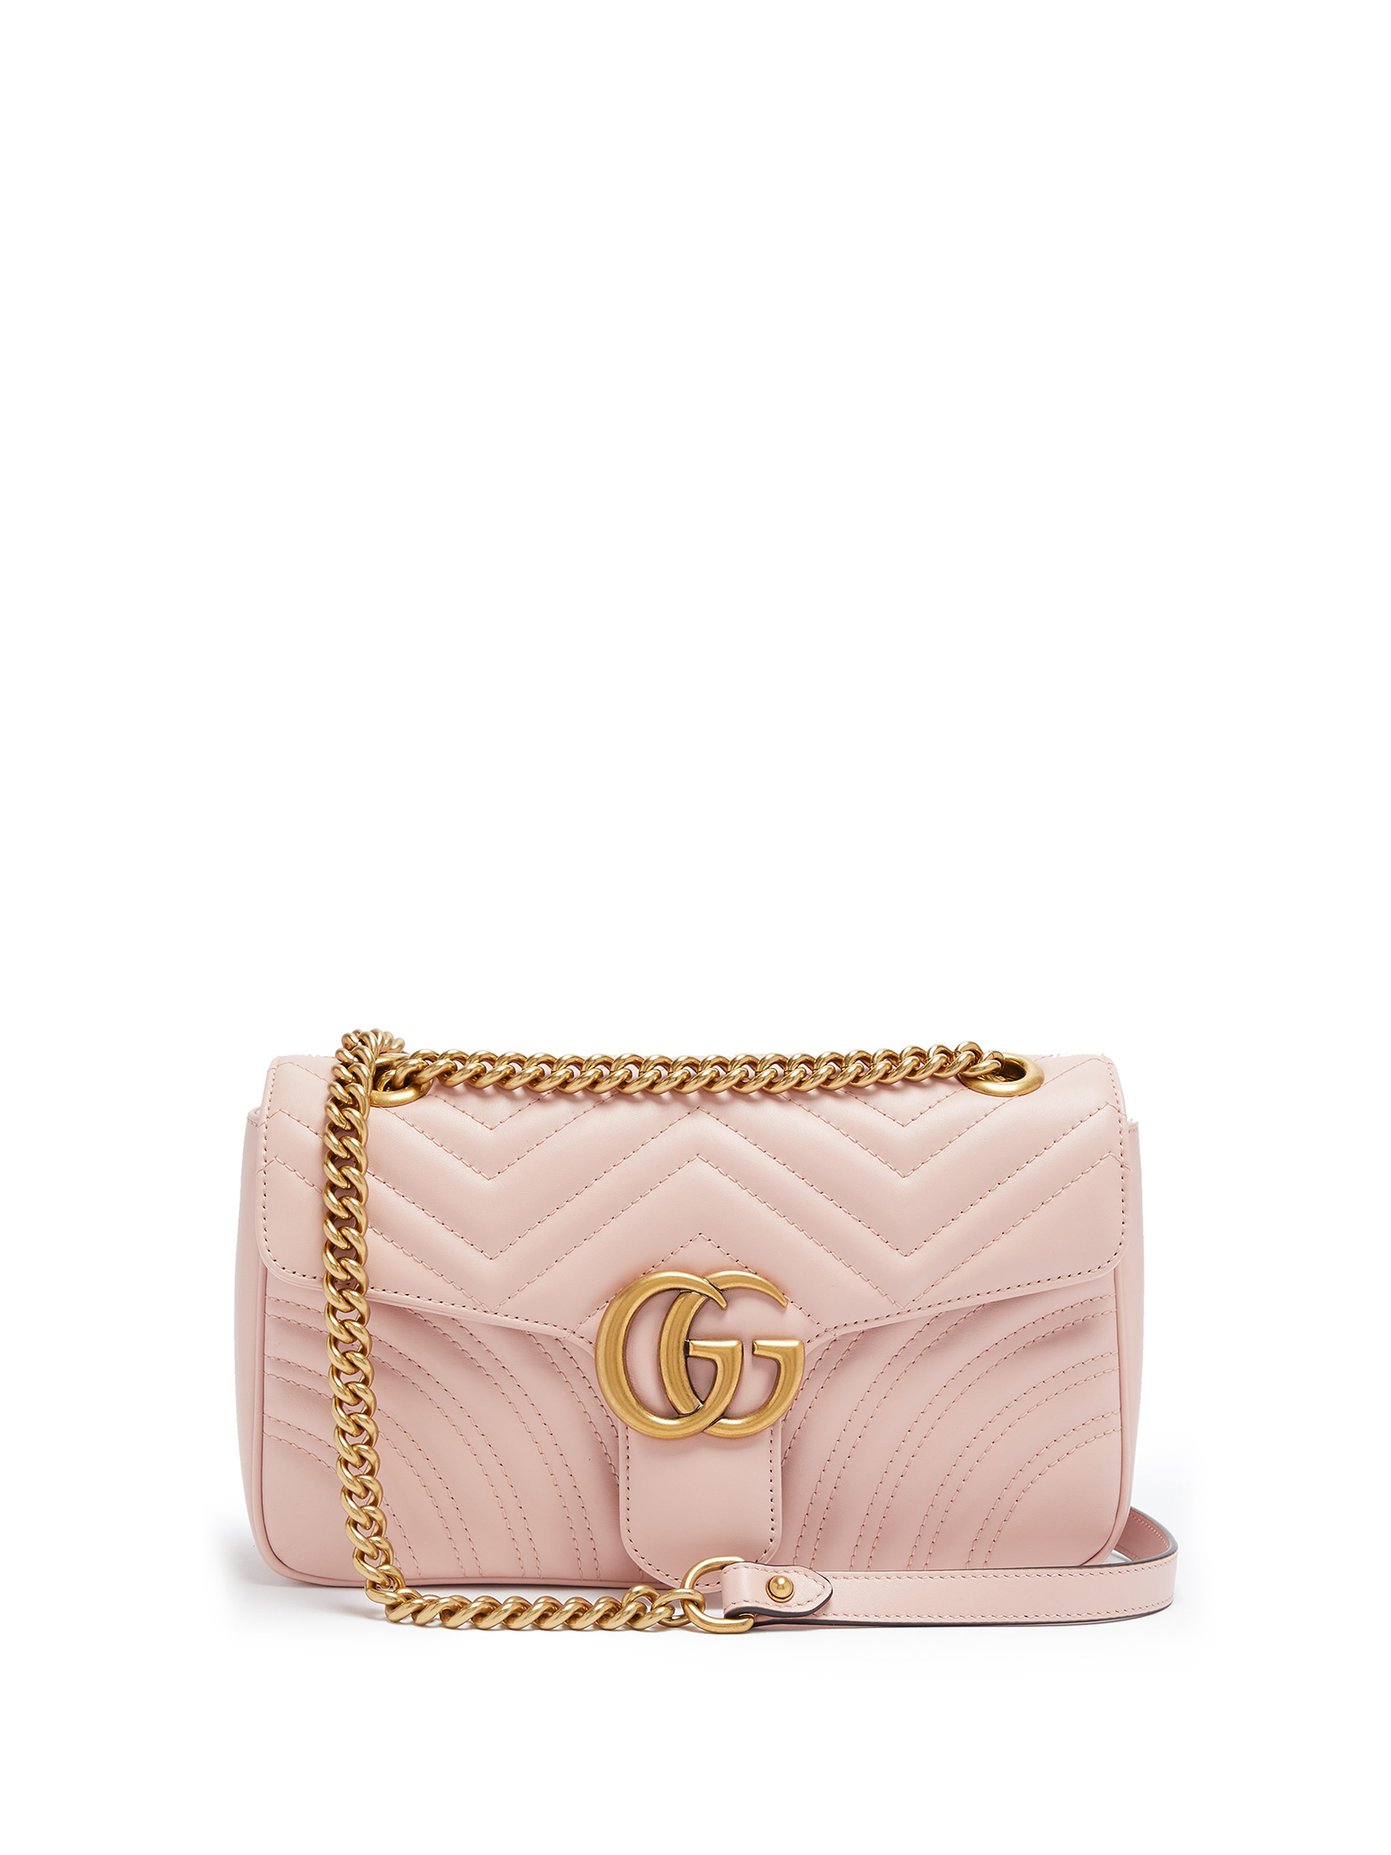 small pink gucci bag